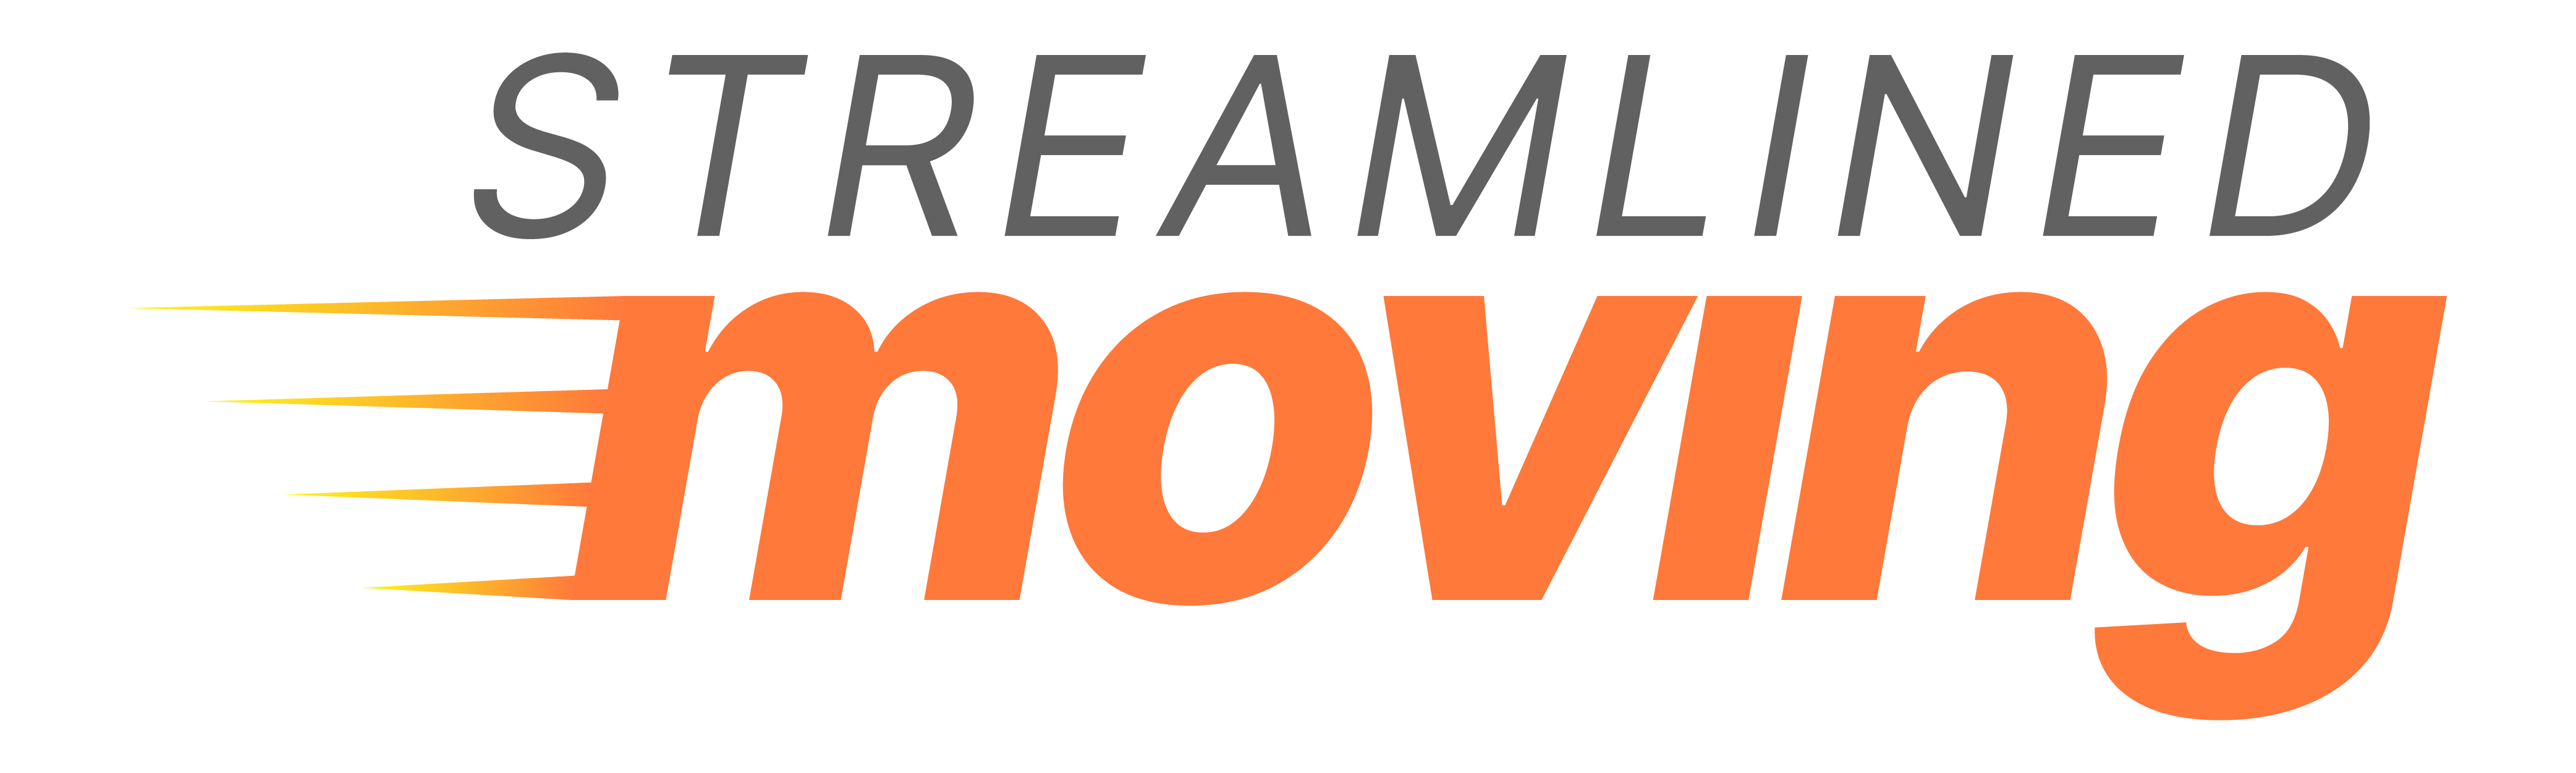 Streamlined Enterprises LLC Logo